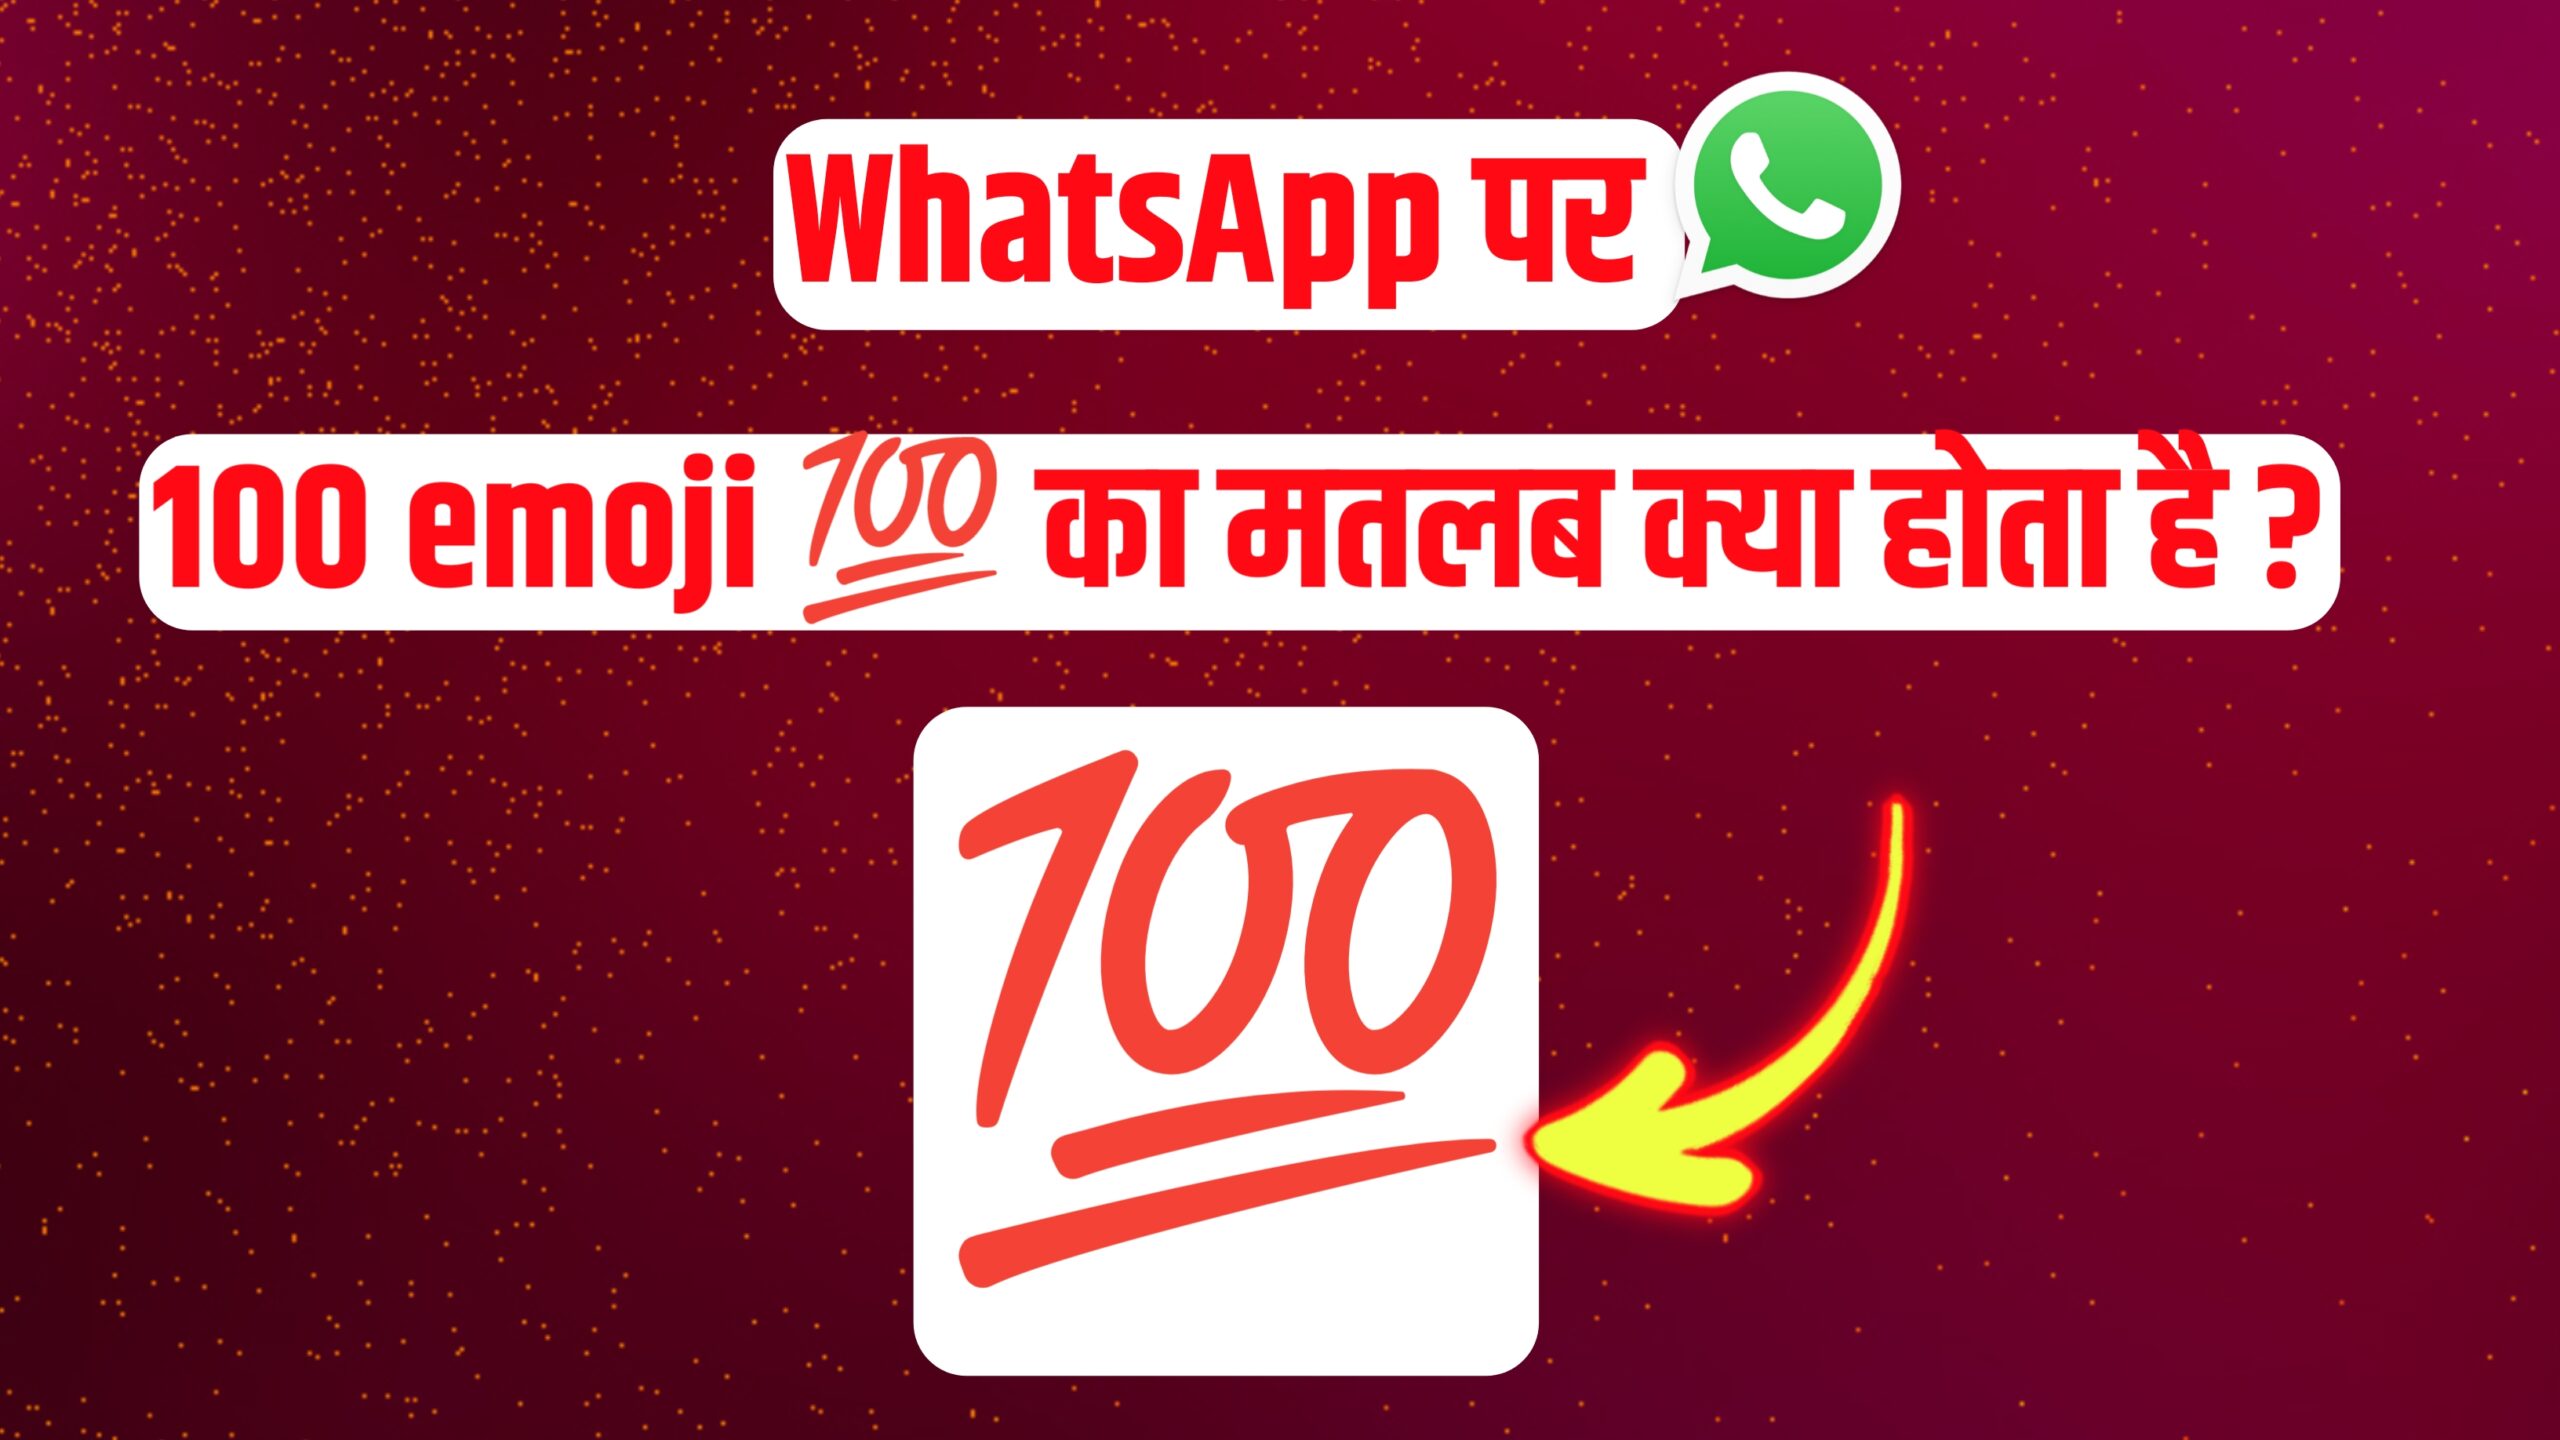 Whatsapp par 100 emoji ka matlab kya hota hai what is the meaning of 100 emoji in whatsapp hindi